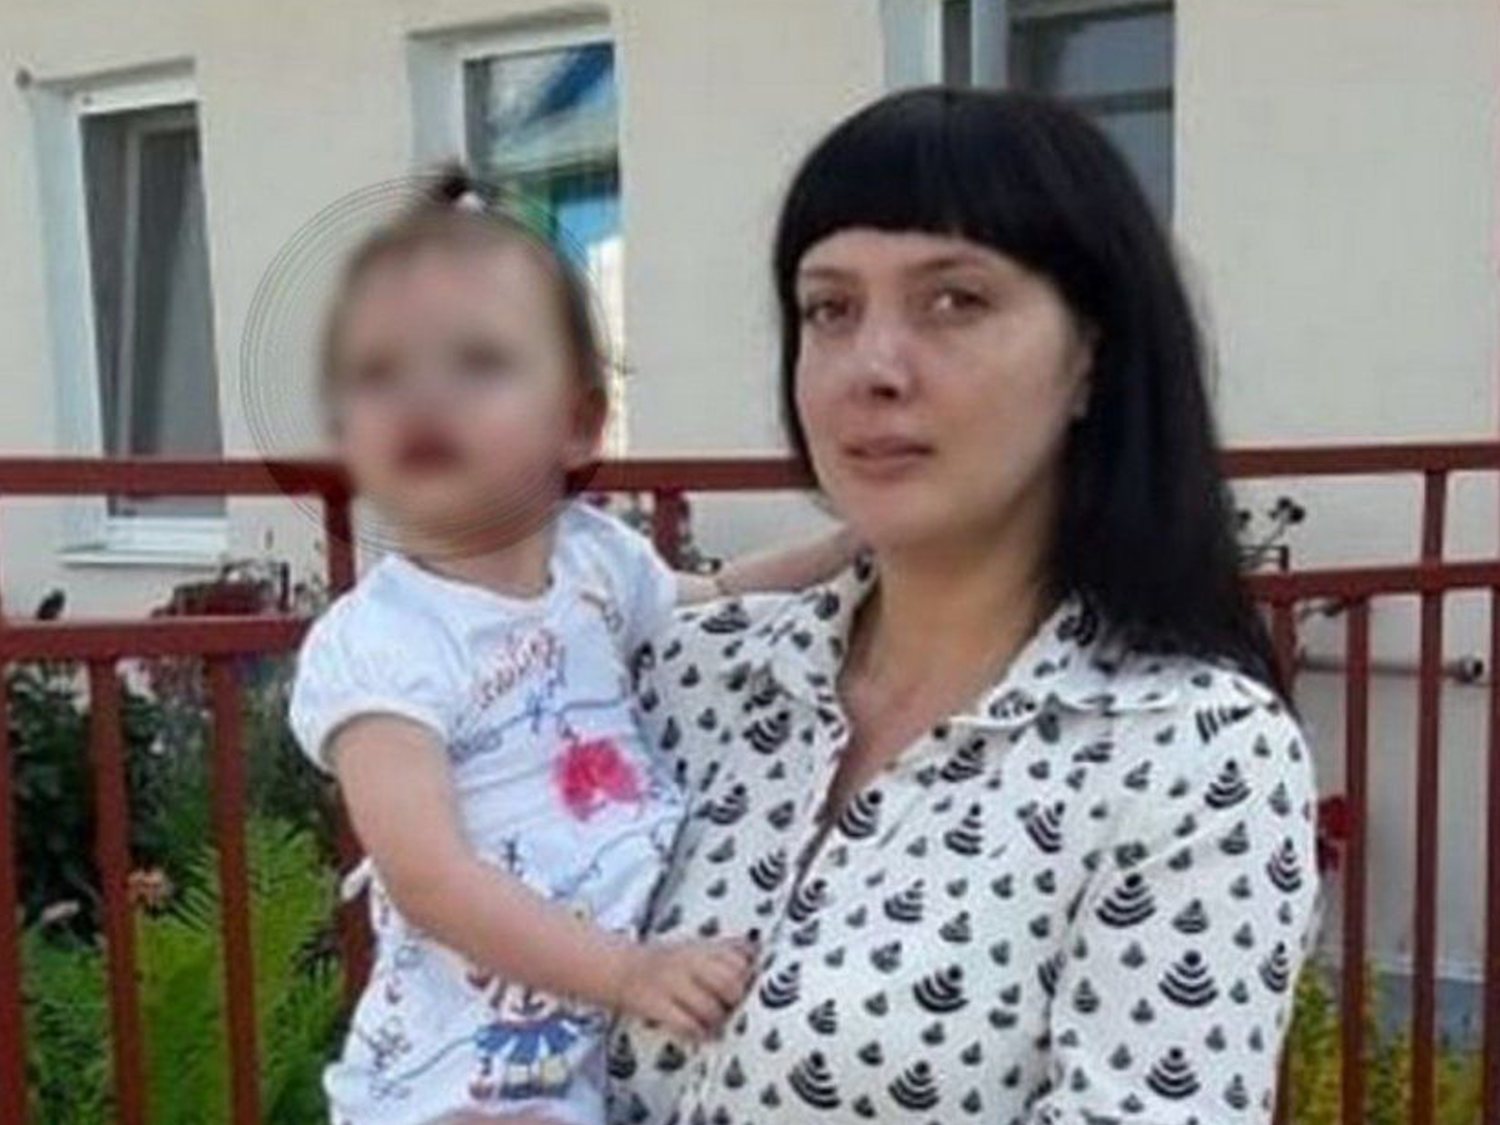 Una madre asesina a su hija de 3 años tras tomar una sobredosis de antidepresivos